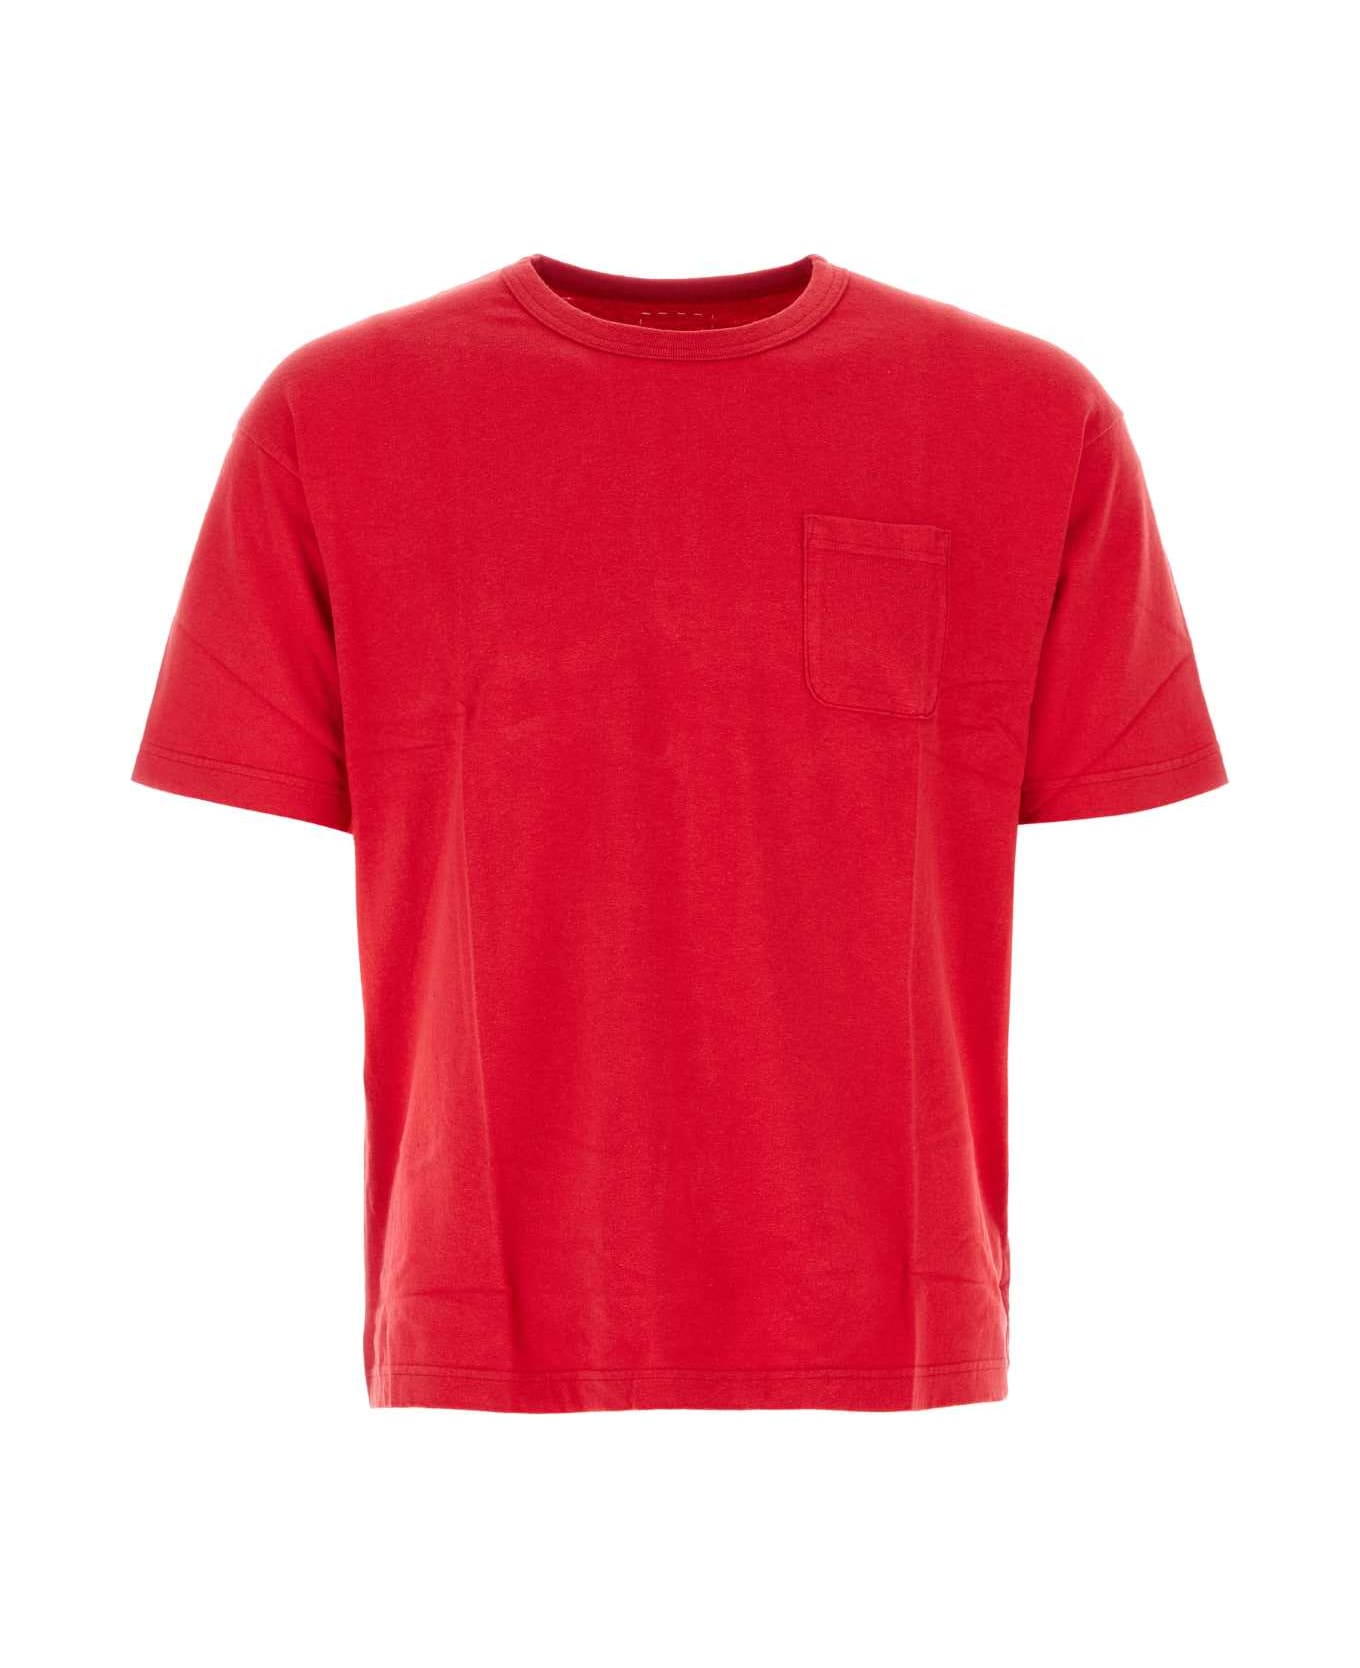 Visvim Red Cotton Jumbo T-shirt - RED